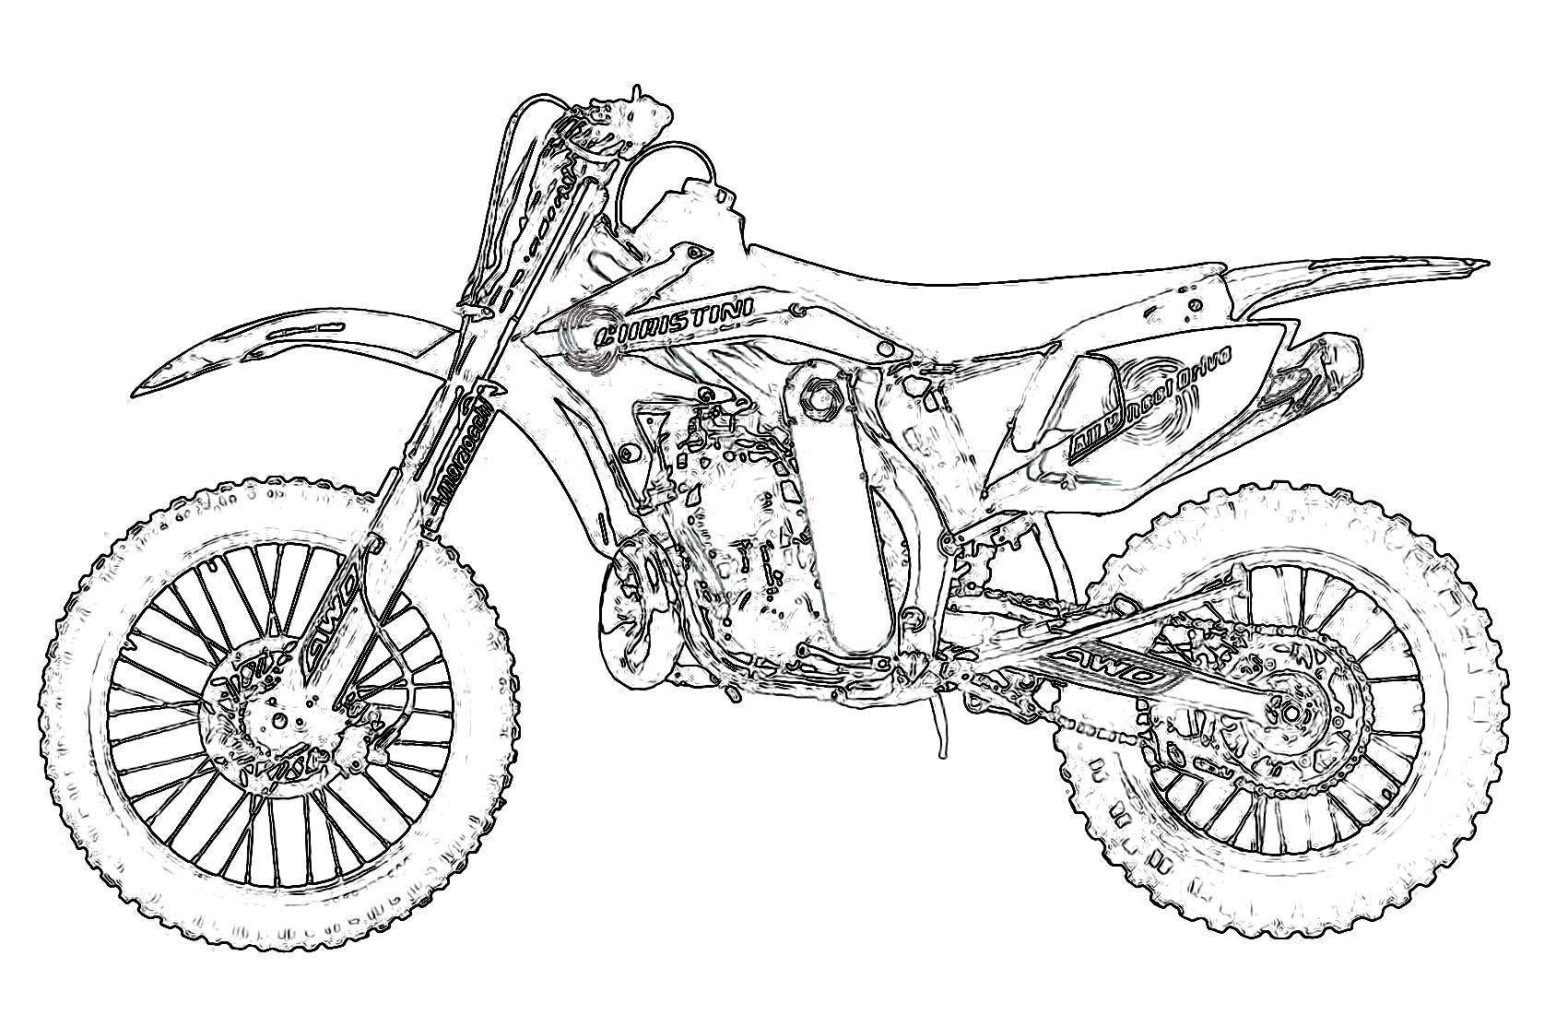 Раскраска транспорт мотоцикл - детская раскраска для развития творческих способностей (мотоцикл, скорость)